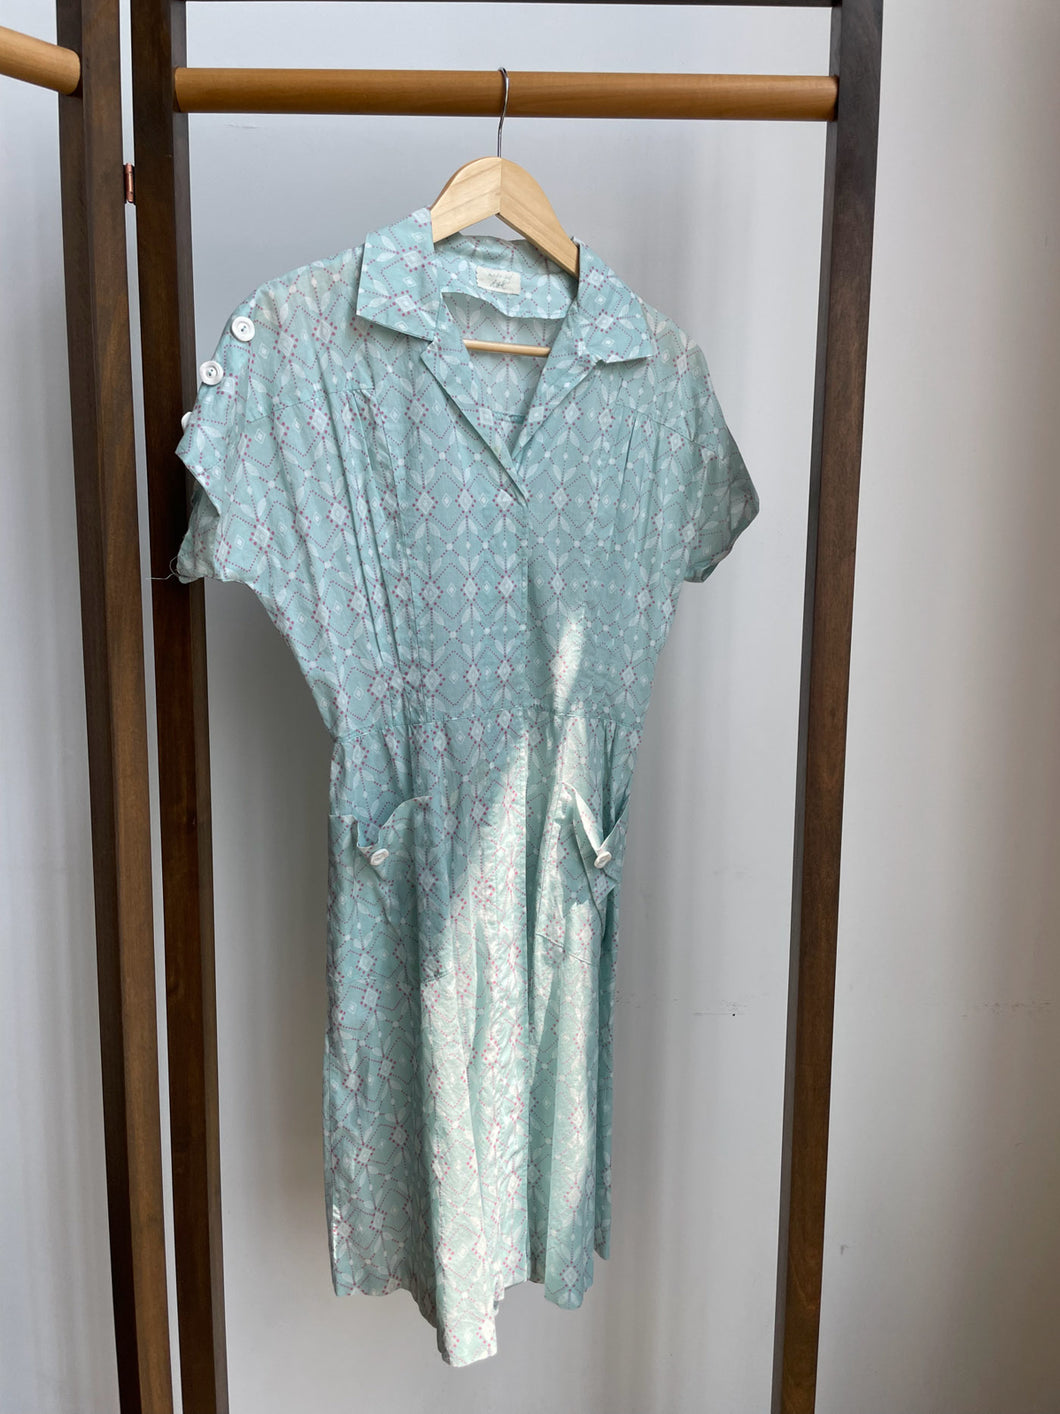 Handmade 40s Inspired House Dress